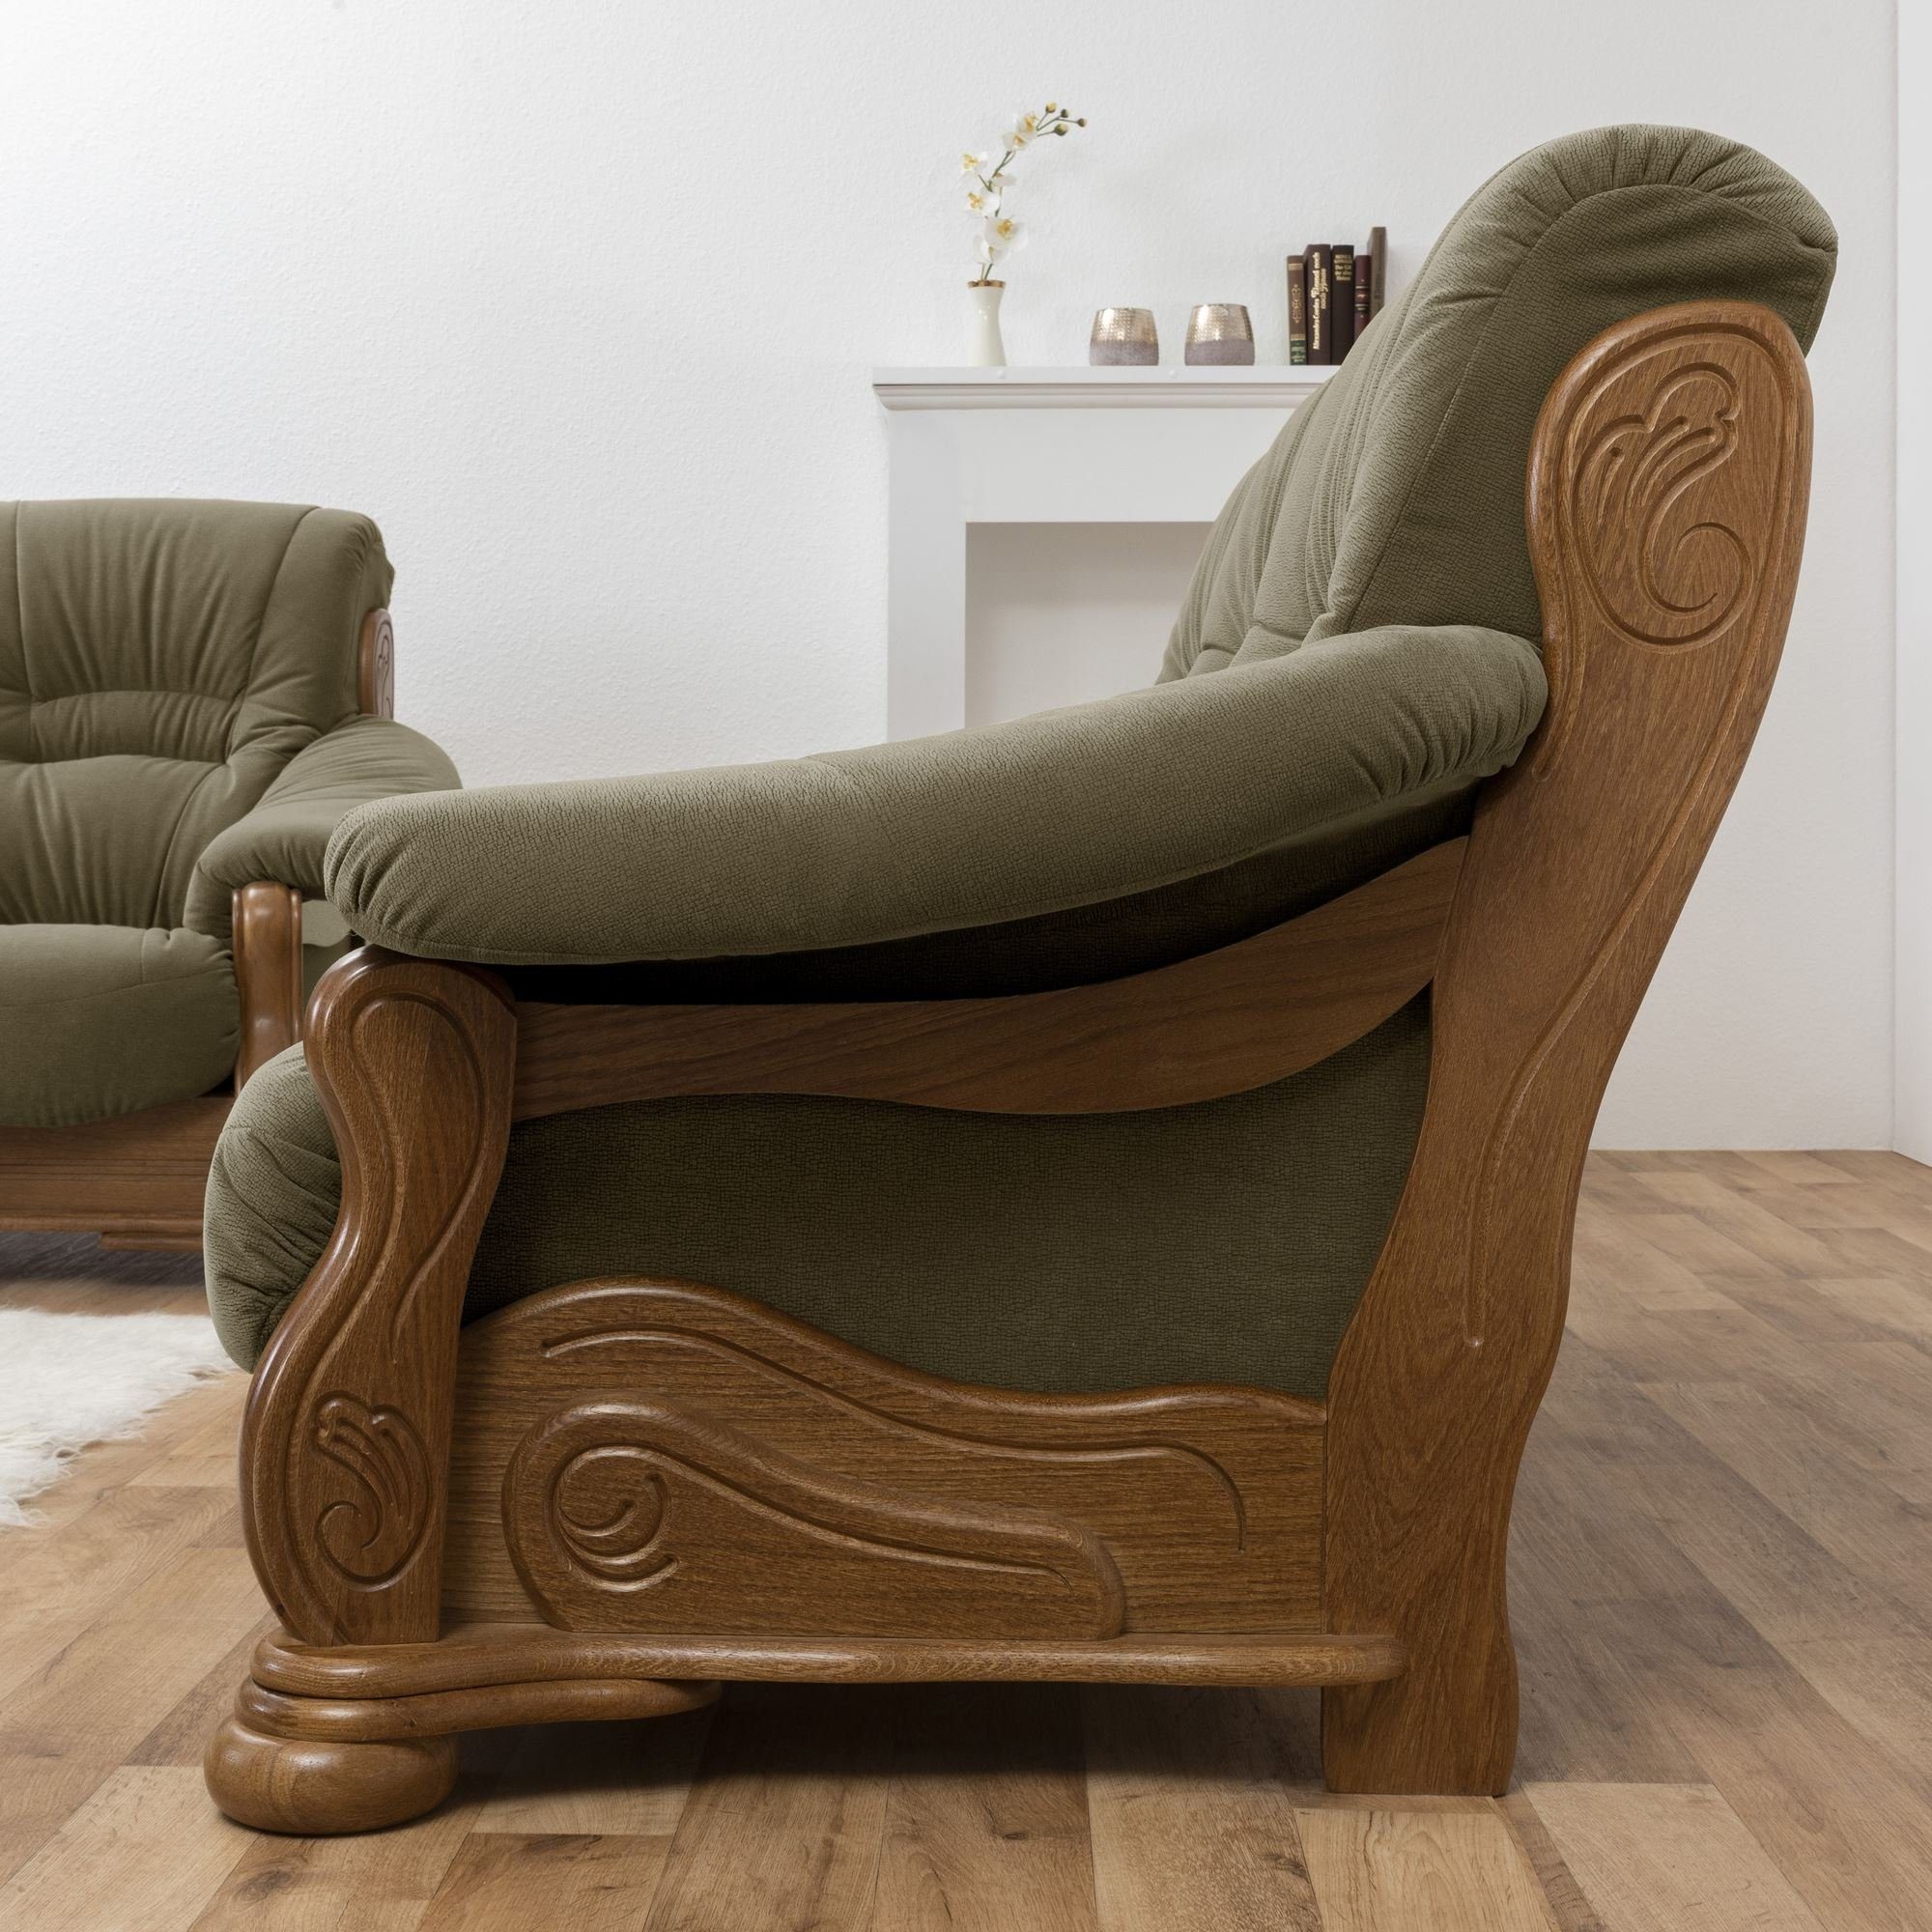 Versand 58 Sitz Sofa Katlin Kessel hochwertig rustik, Flockstoff inkl. Bezug 1 Kostenlosem Teile, verarbeitet,bequemer Sofa aufm Eiche 3-Sitzer Sparpreis